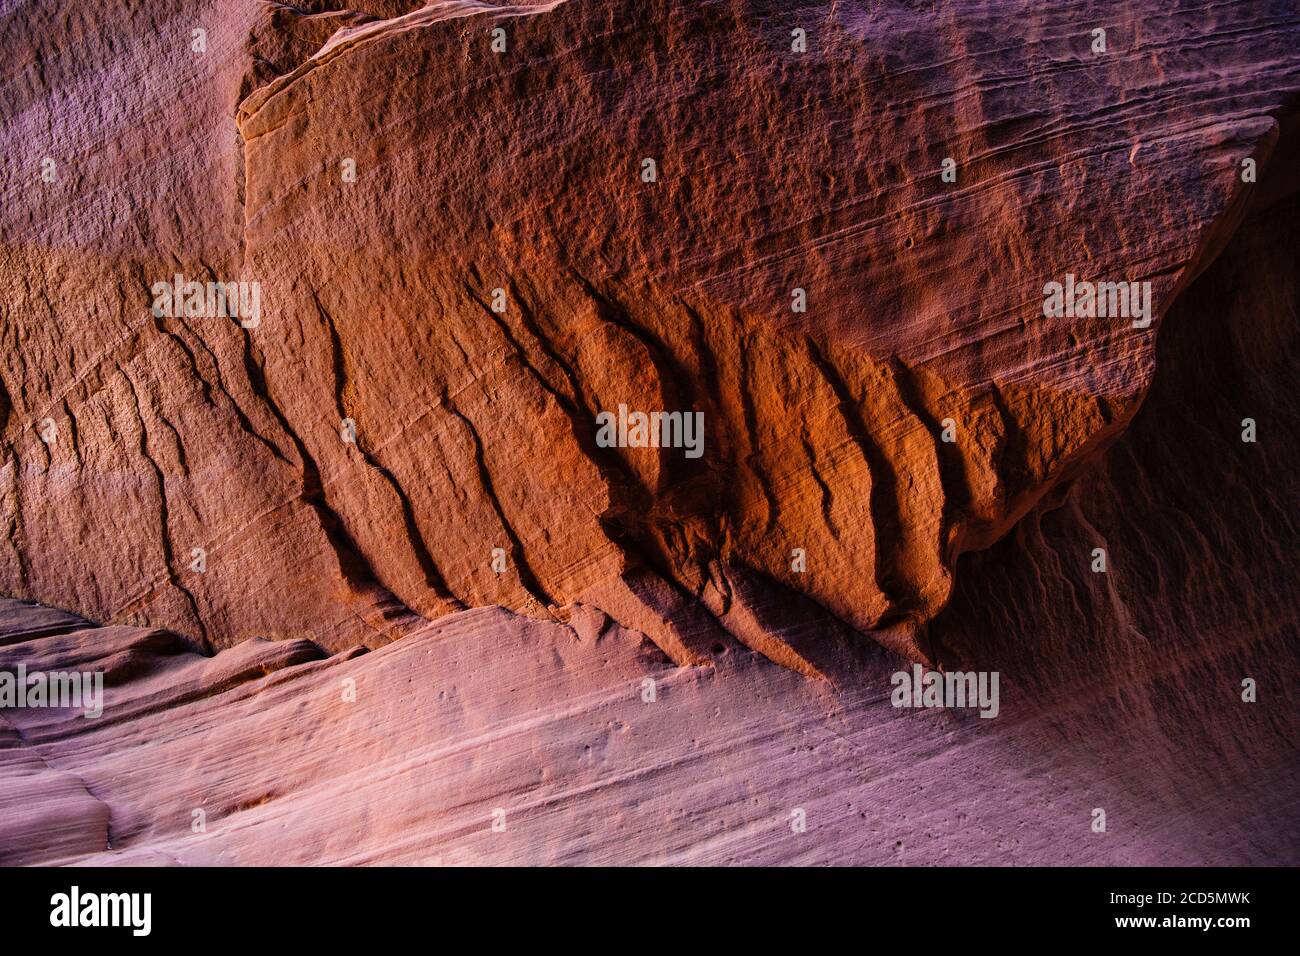 Vermillion Cliffs, Buckskin Gulch, Paria Canyon, Utah, USA Stock Photo